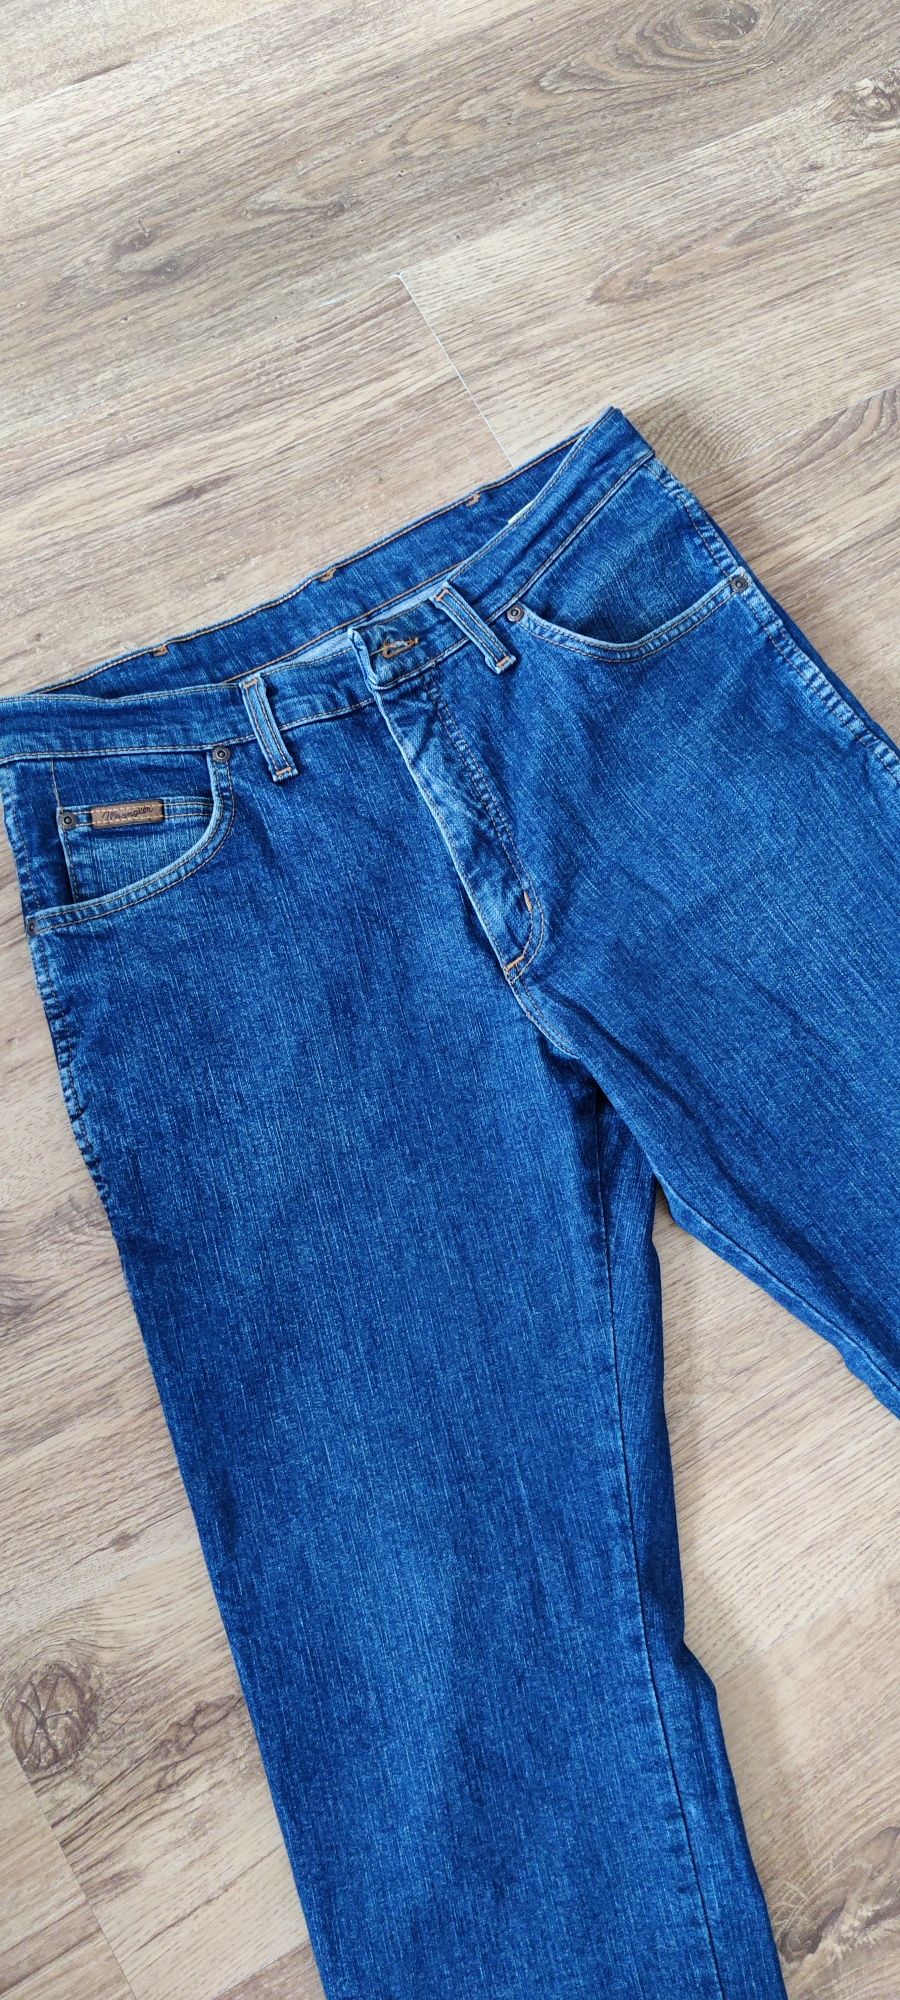 Spodnie jeansowe Wrangler rozmiar 30/33